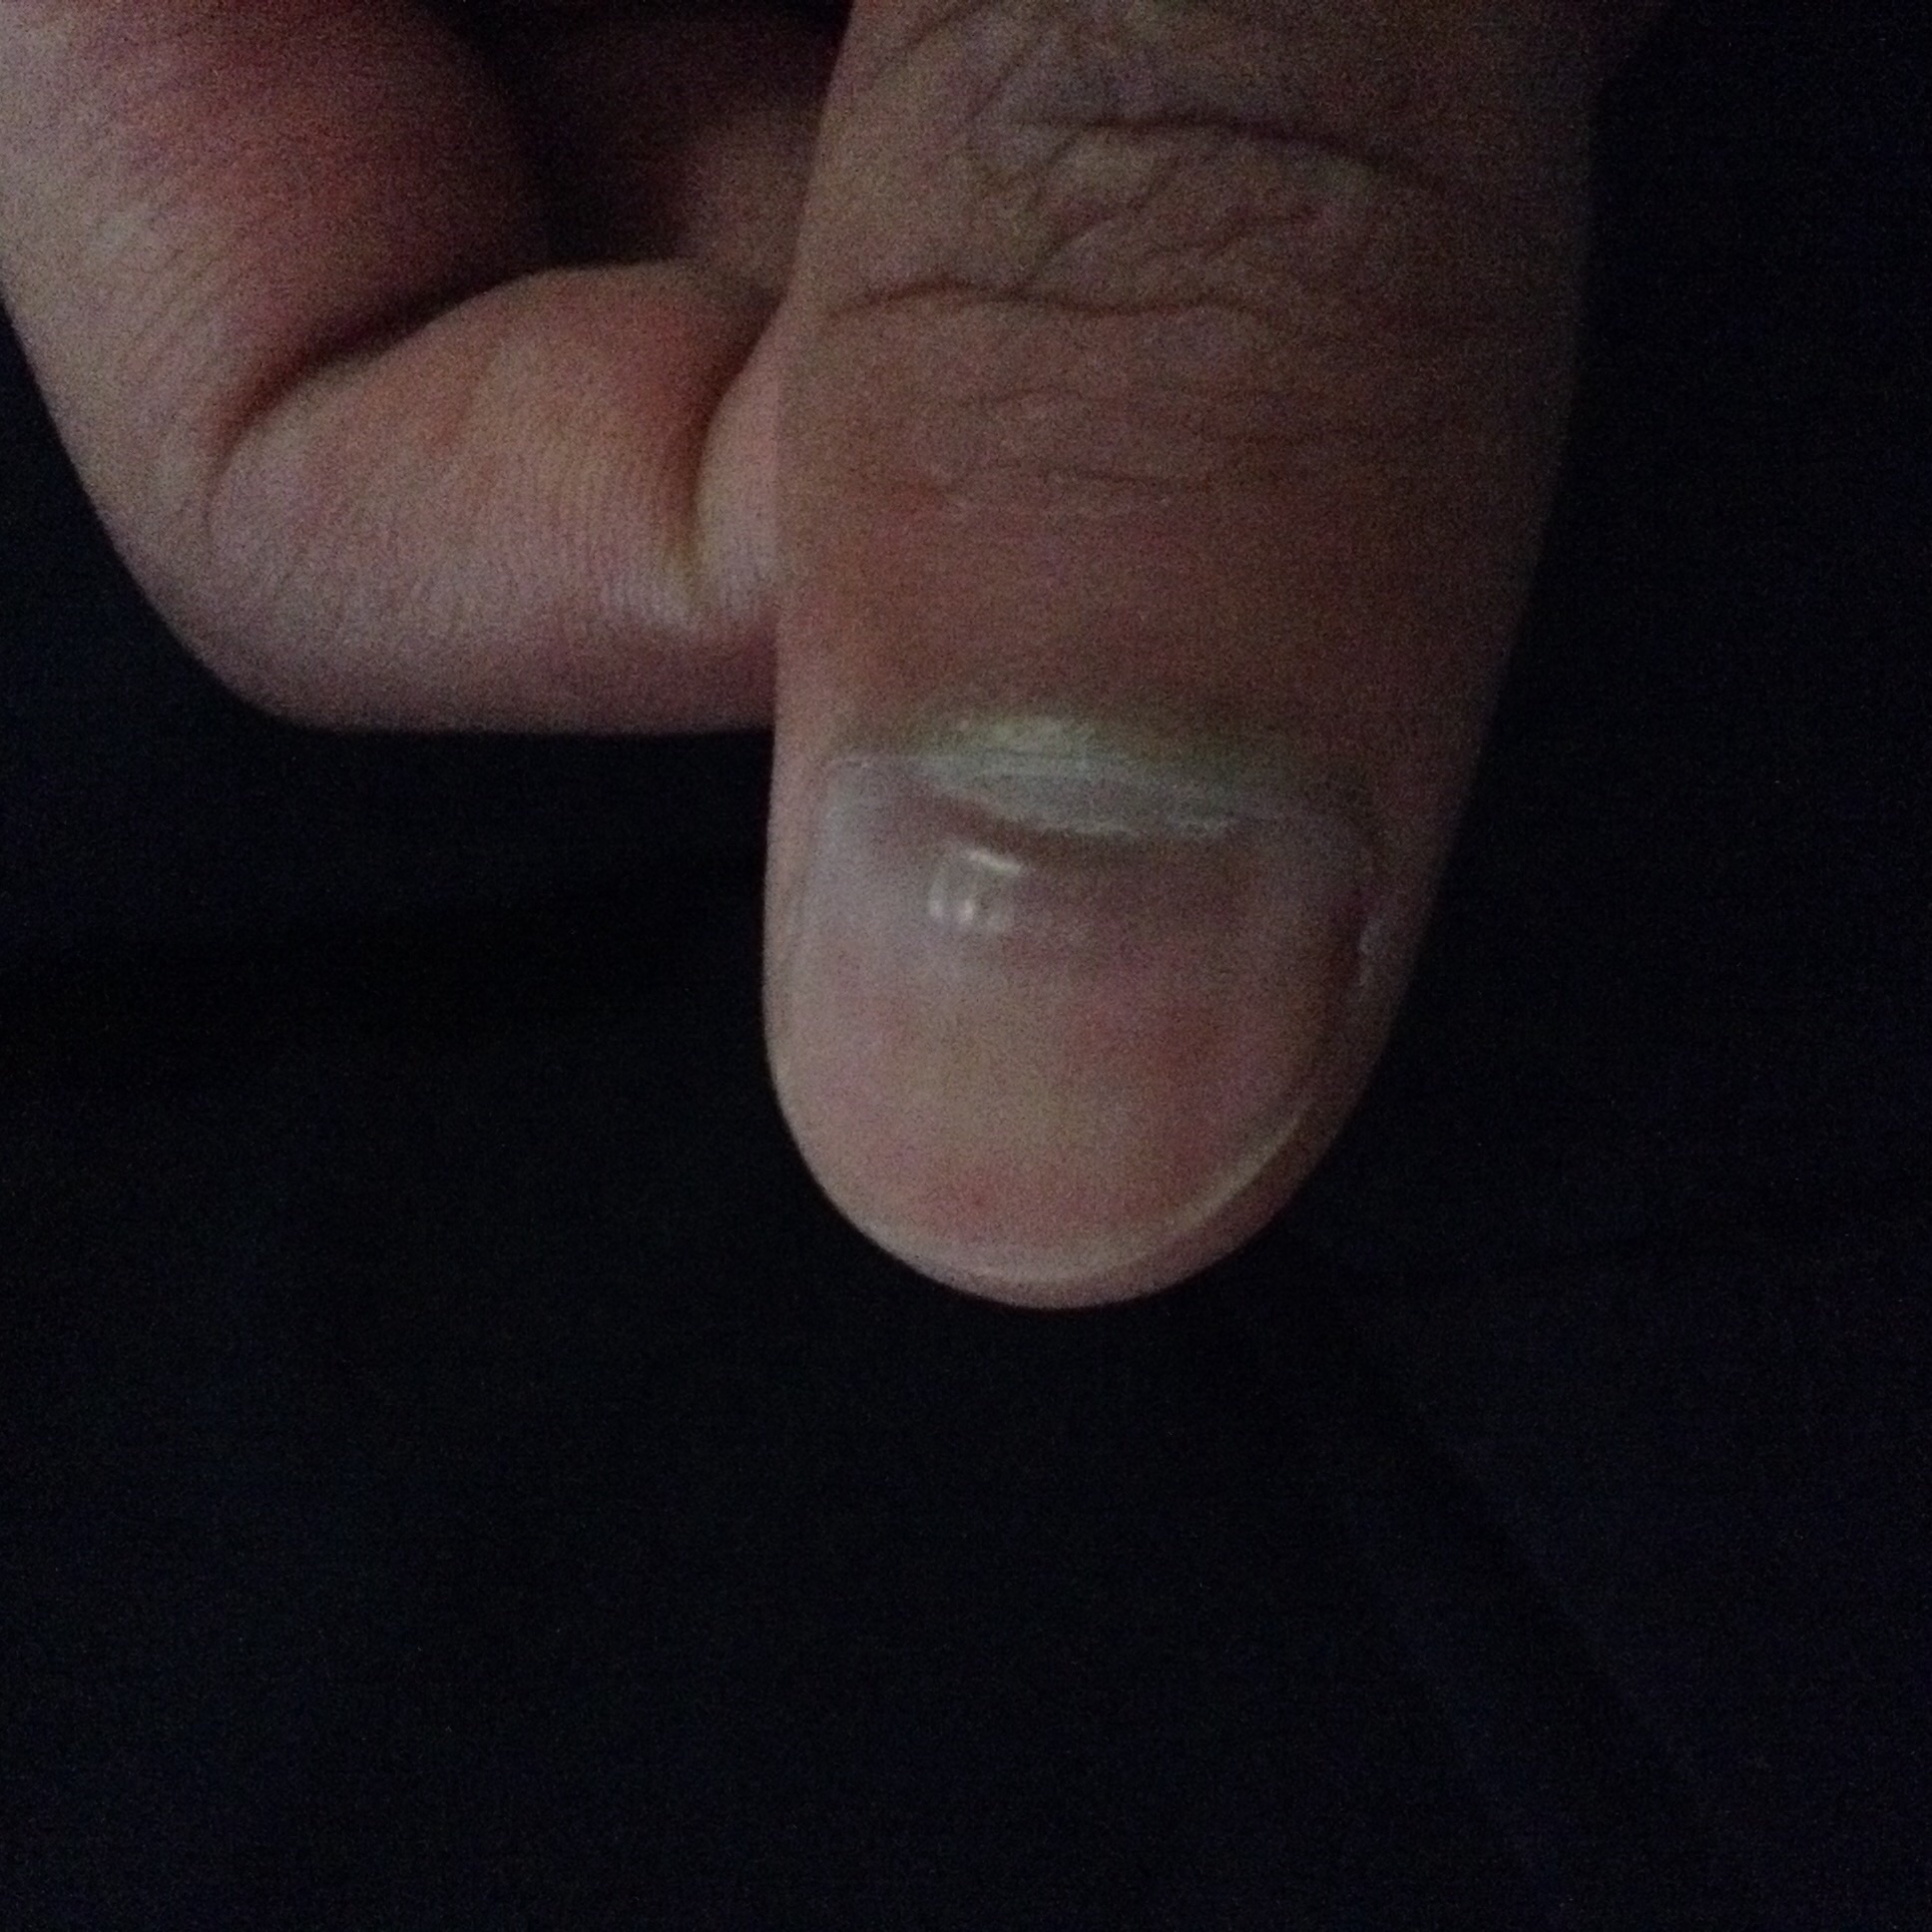 手指甲根部发紫且凹陷,这种情况将近有1个月了.问过医生,医生